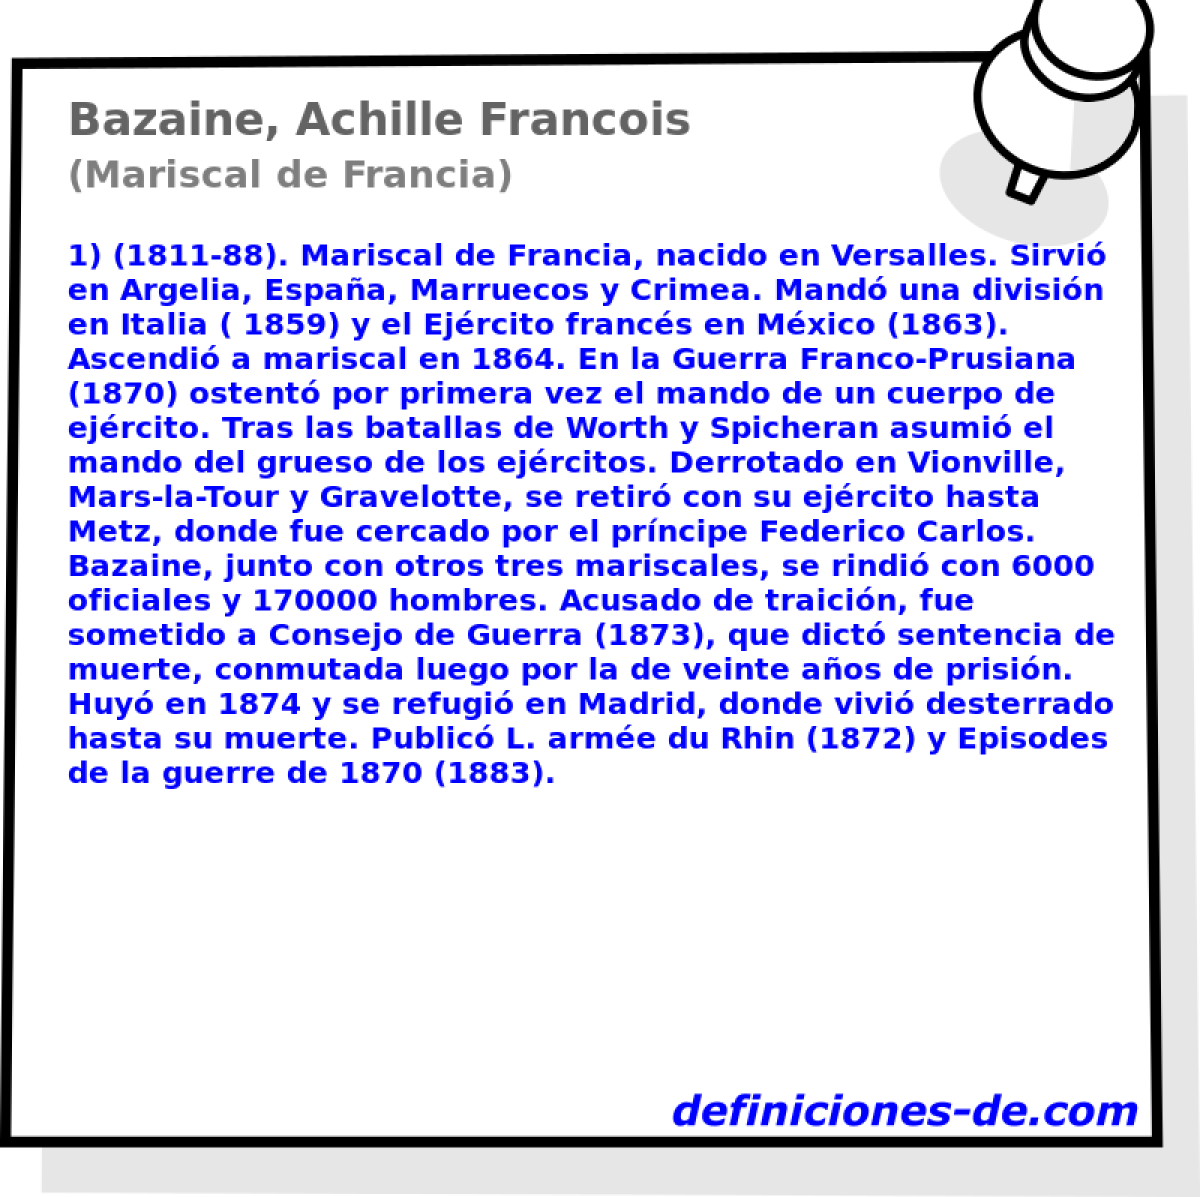 Bazaine, Achille Francois (Mariscal de Francia)